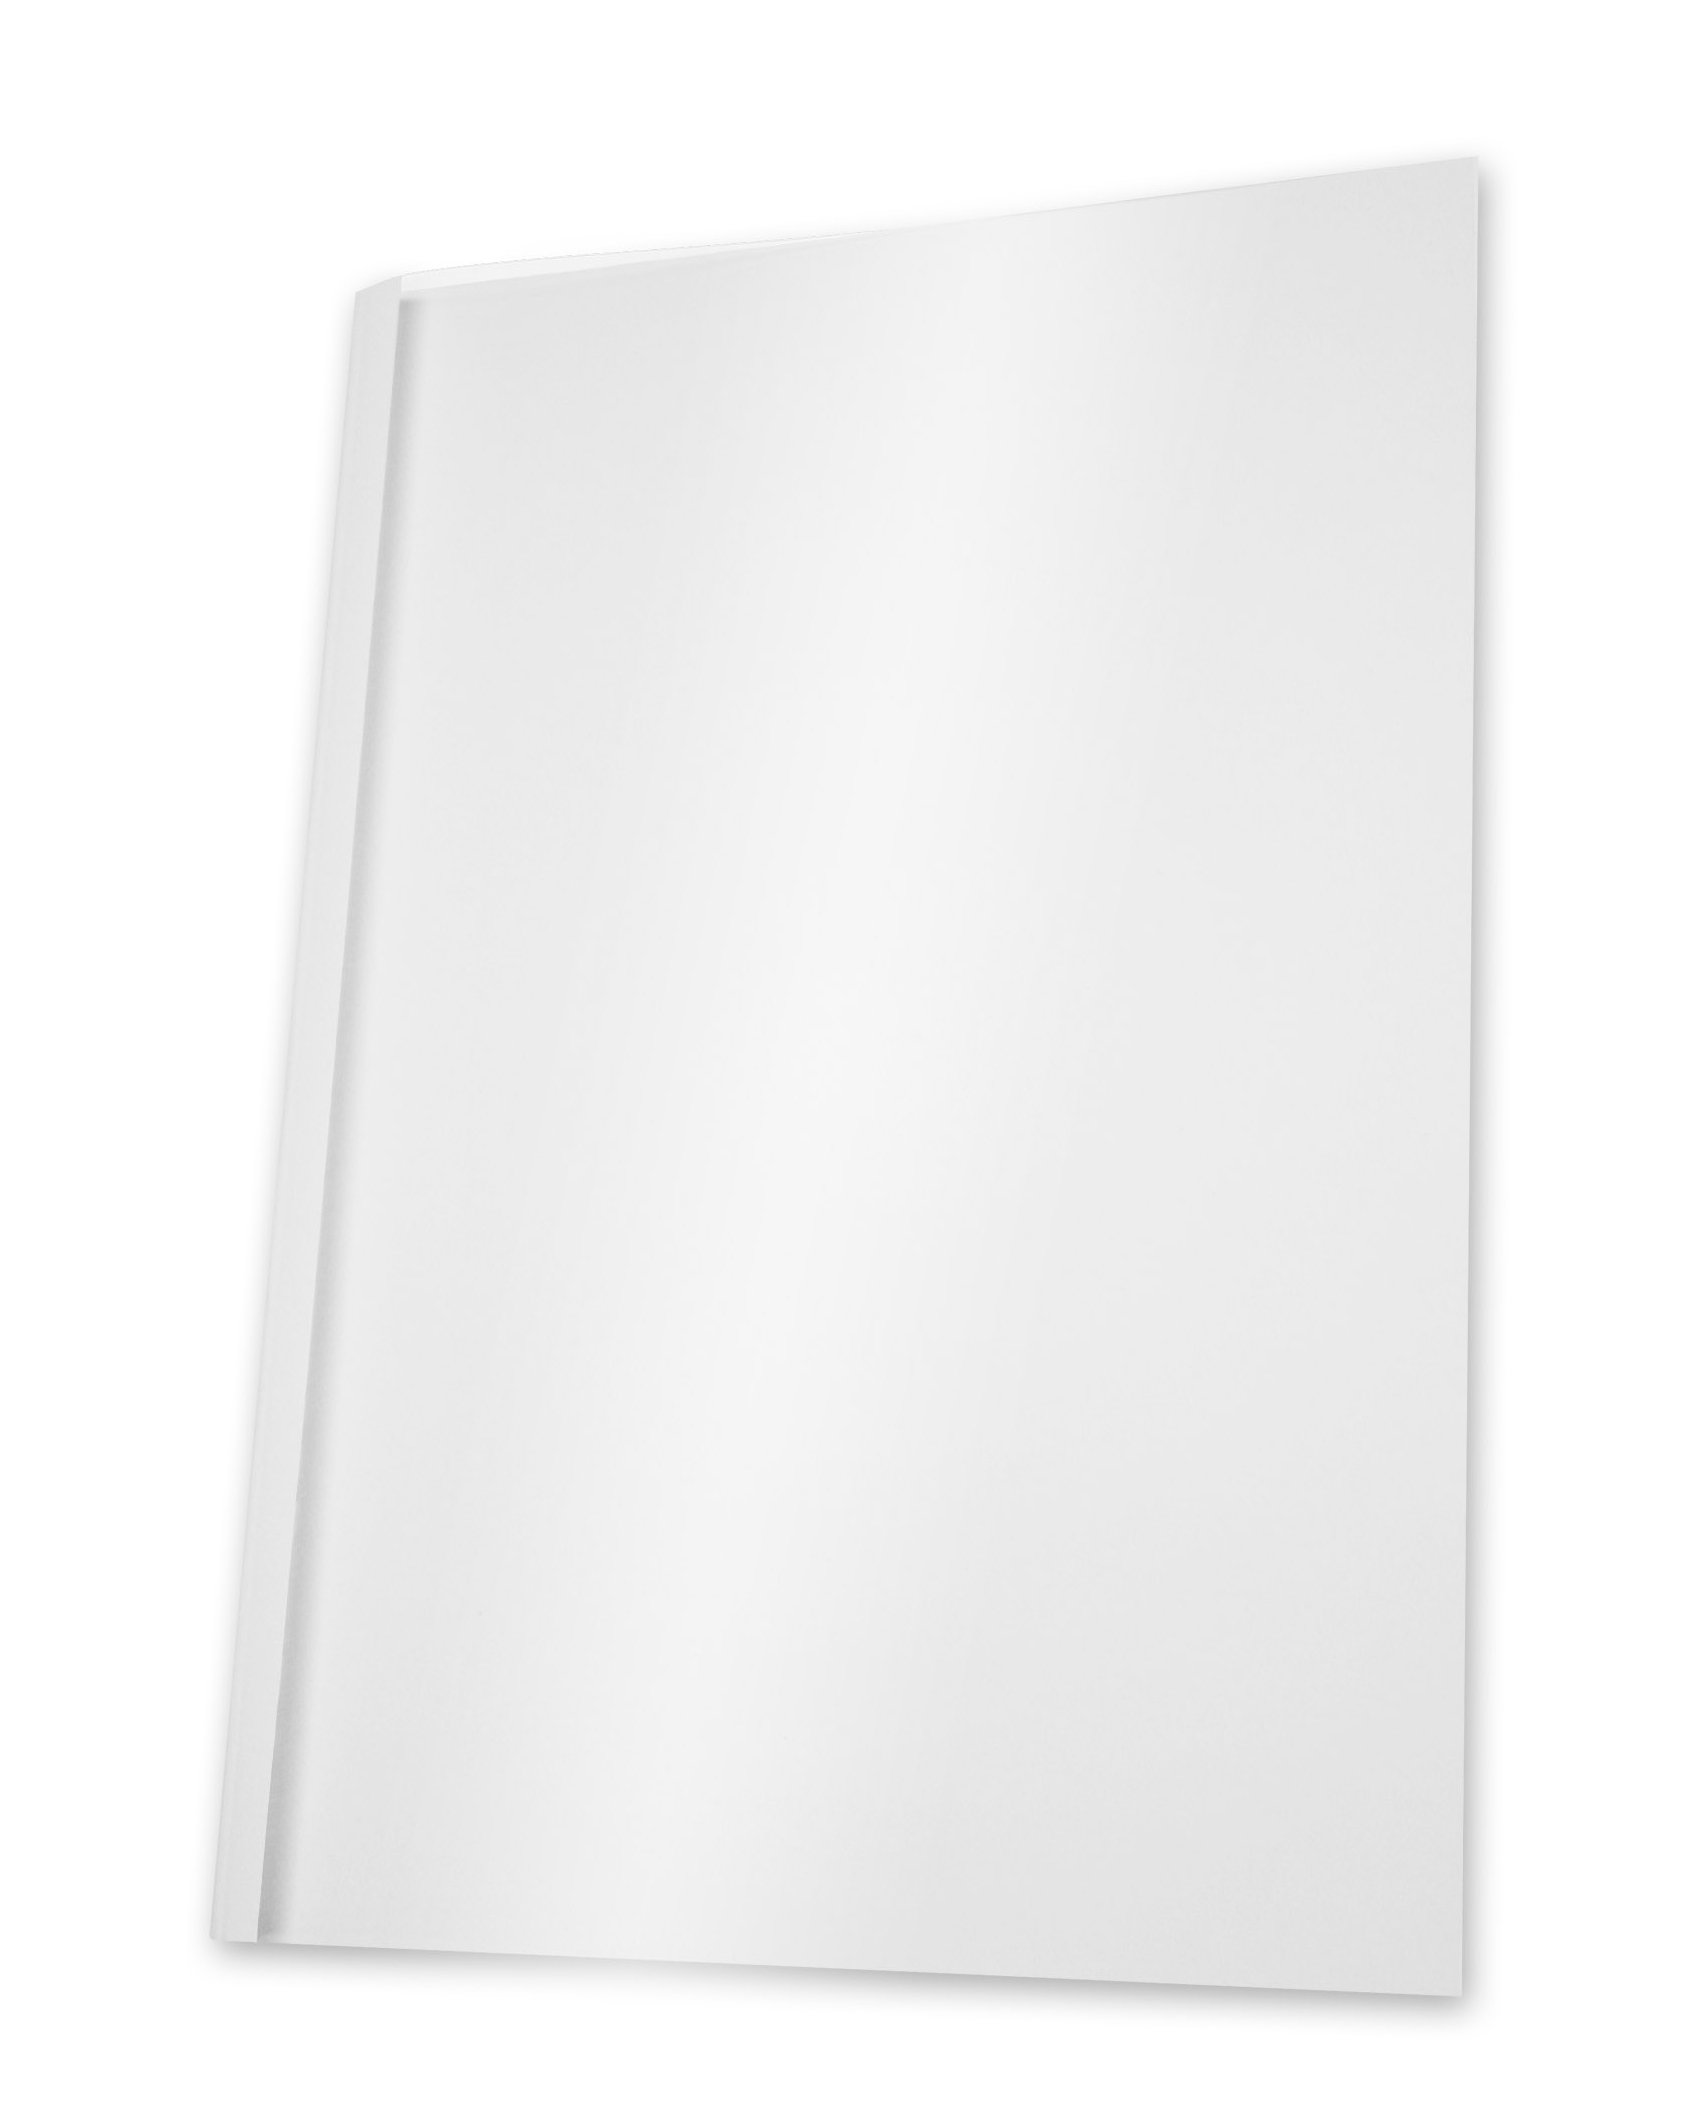 Pavo,8003600,Thermo-bindemappen AA8A4, Rückenbreite6 mm, 100-erPack, 41-60 Blatt, weiß/transparent